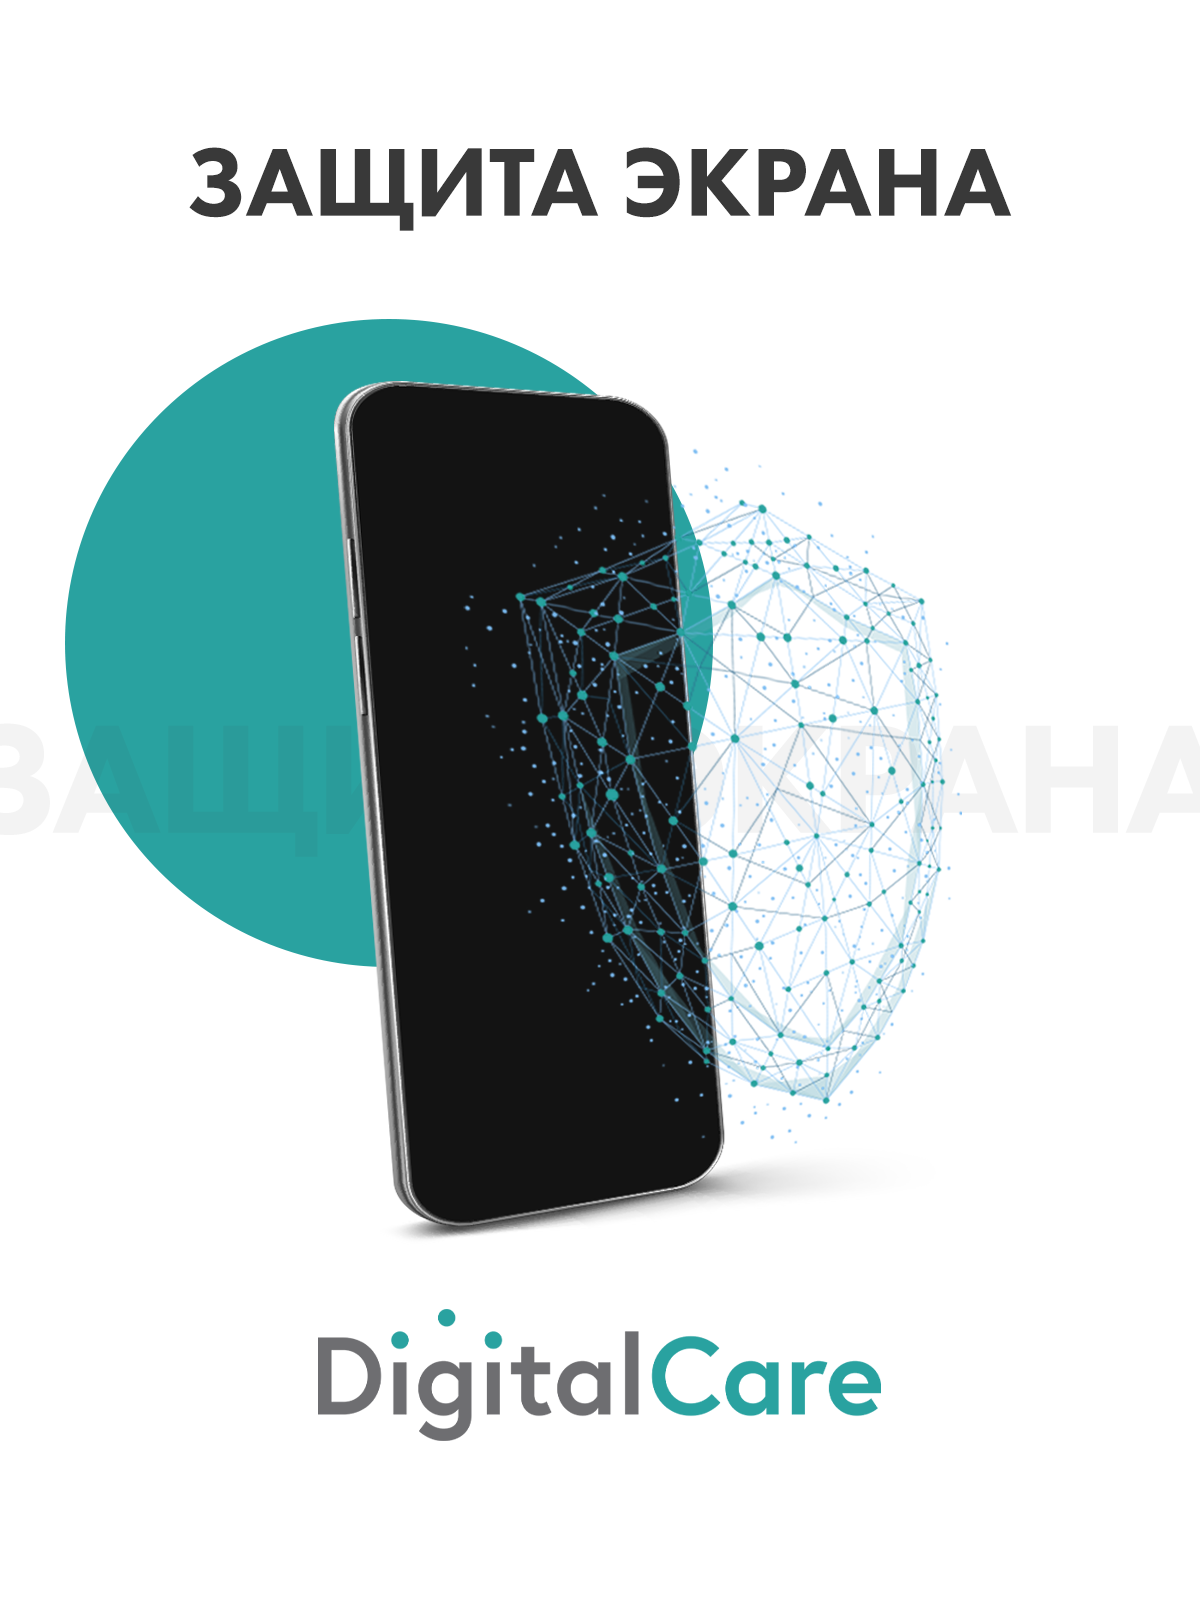 Цифровой продукт Digital Care цифровой продукт digital care